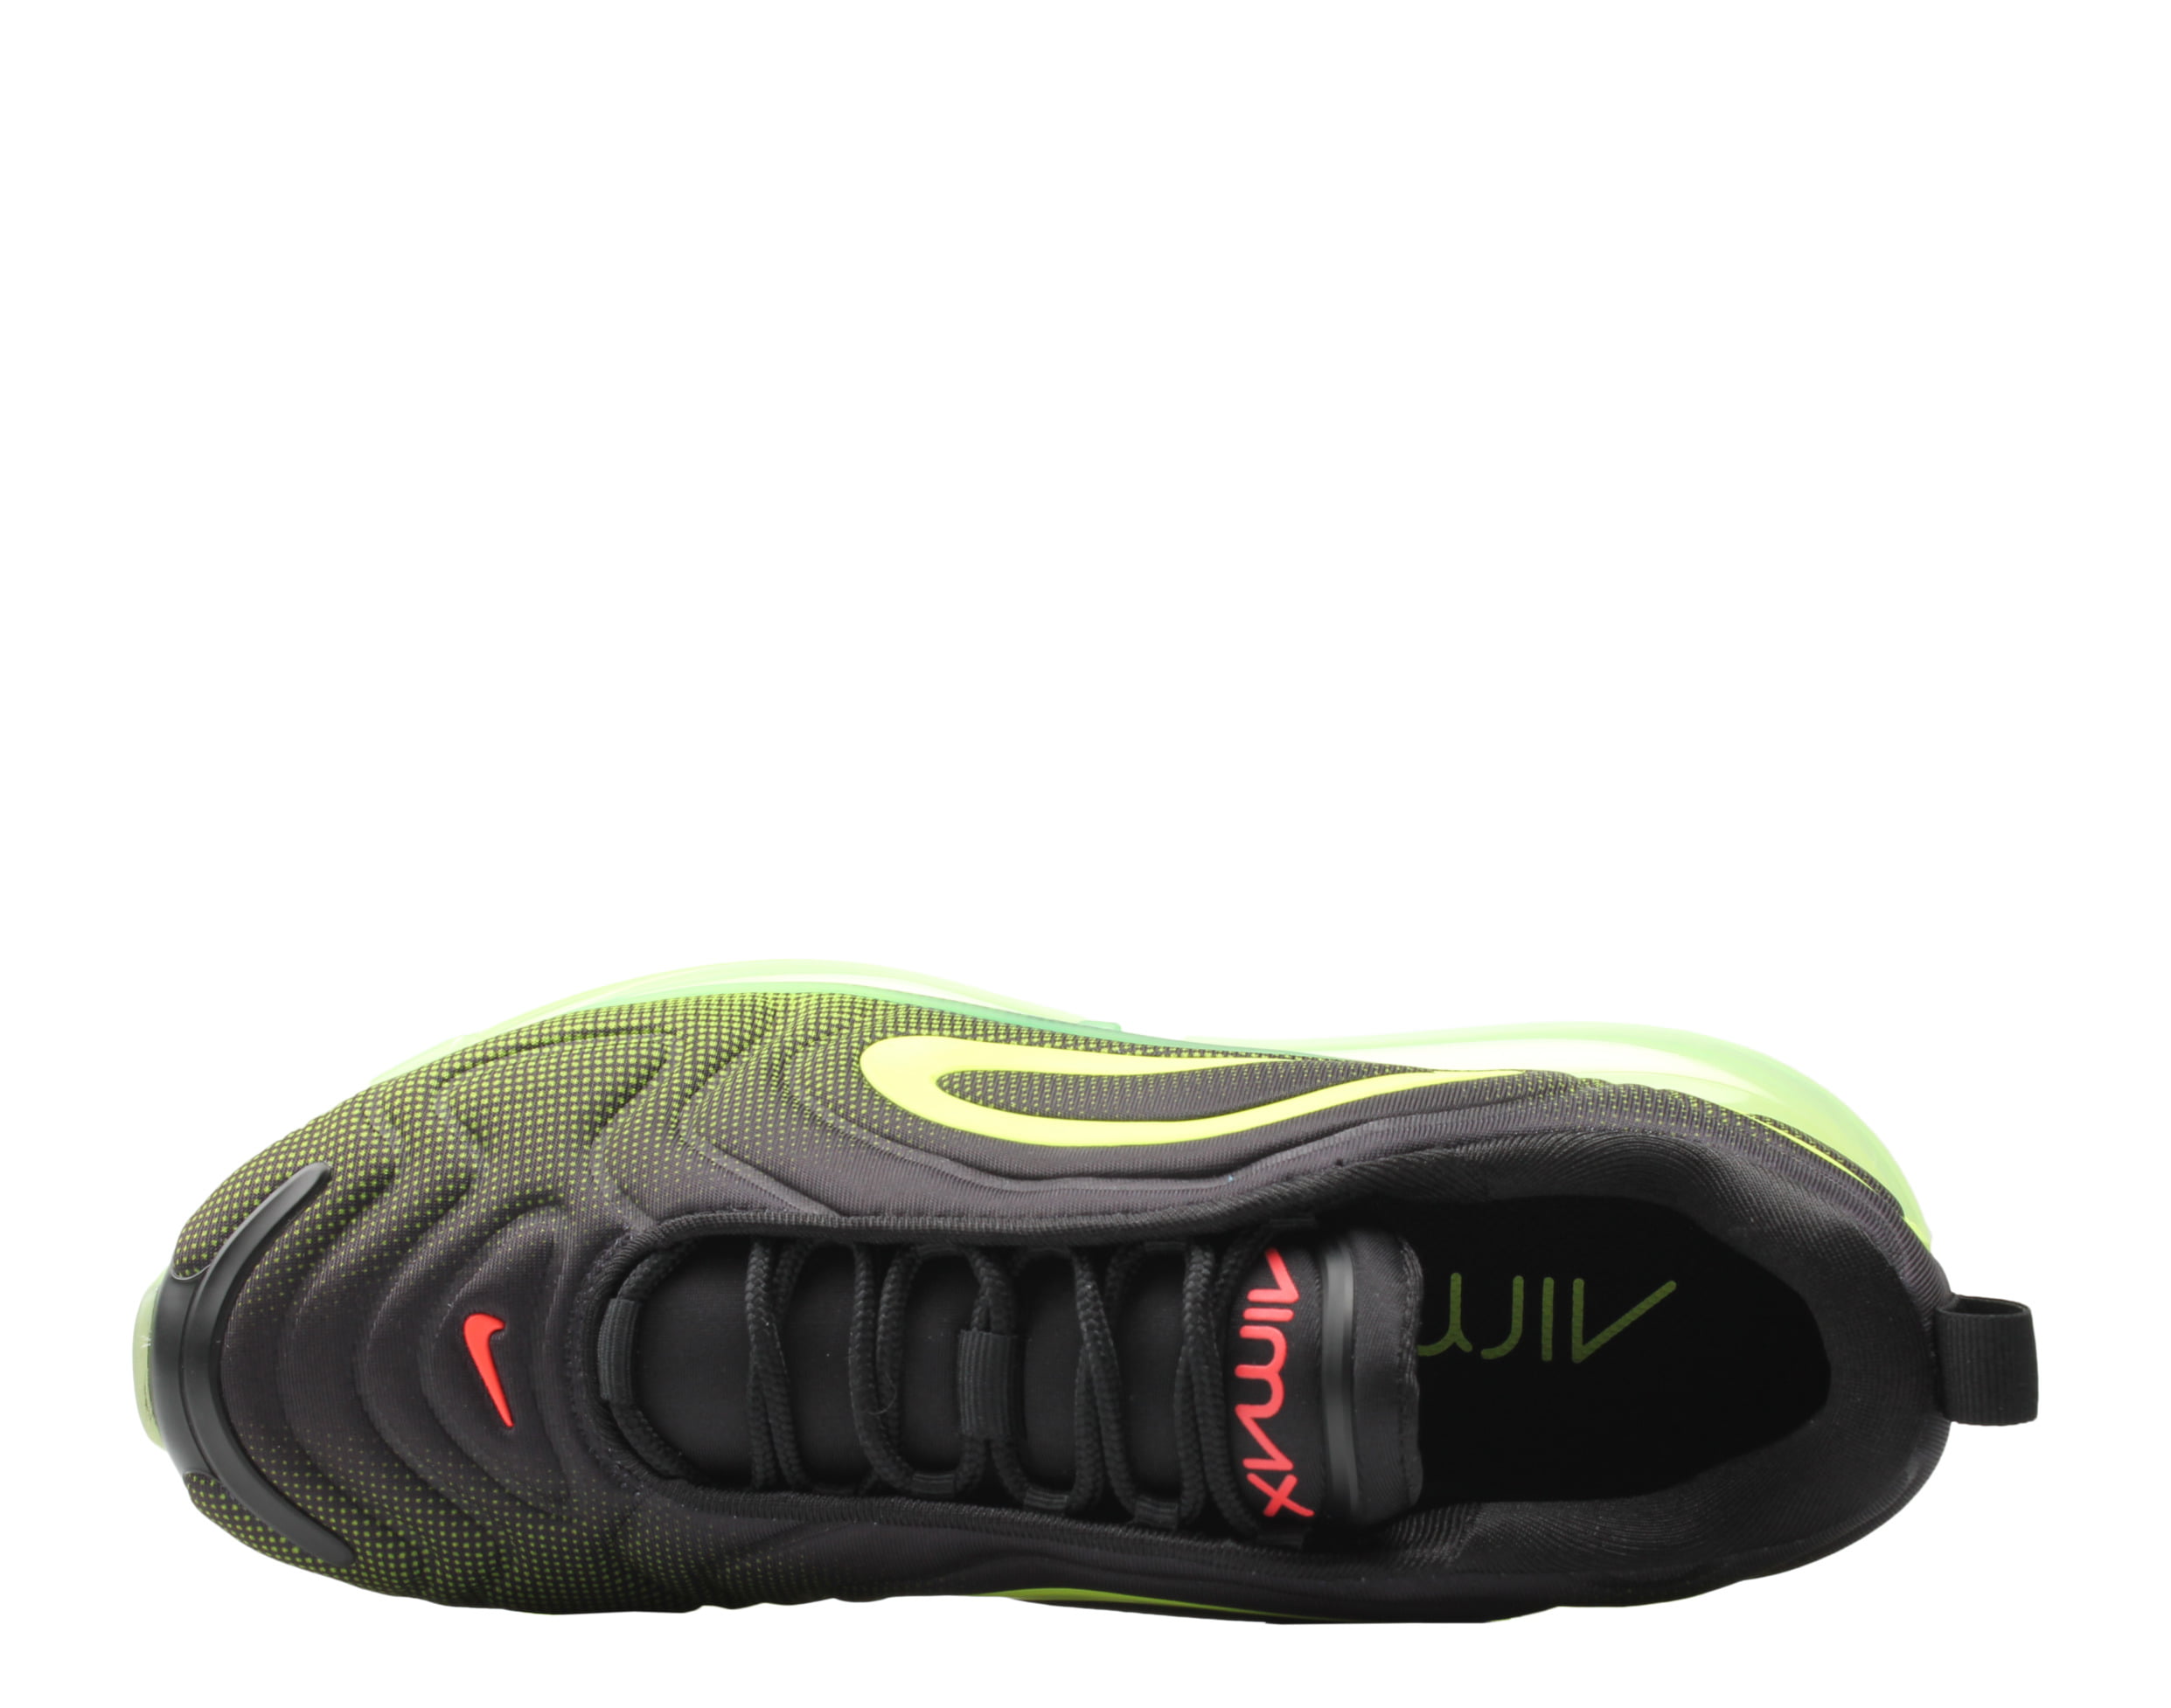 Nike Air Max 720 Black/Bright Crimson-Volt Men's Lifestyle Shoes 